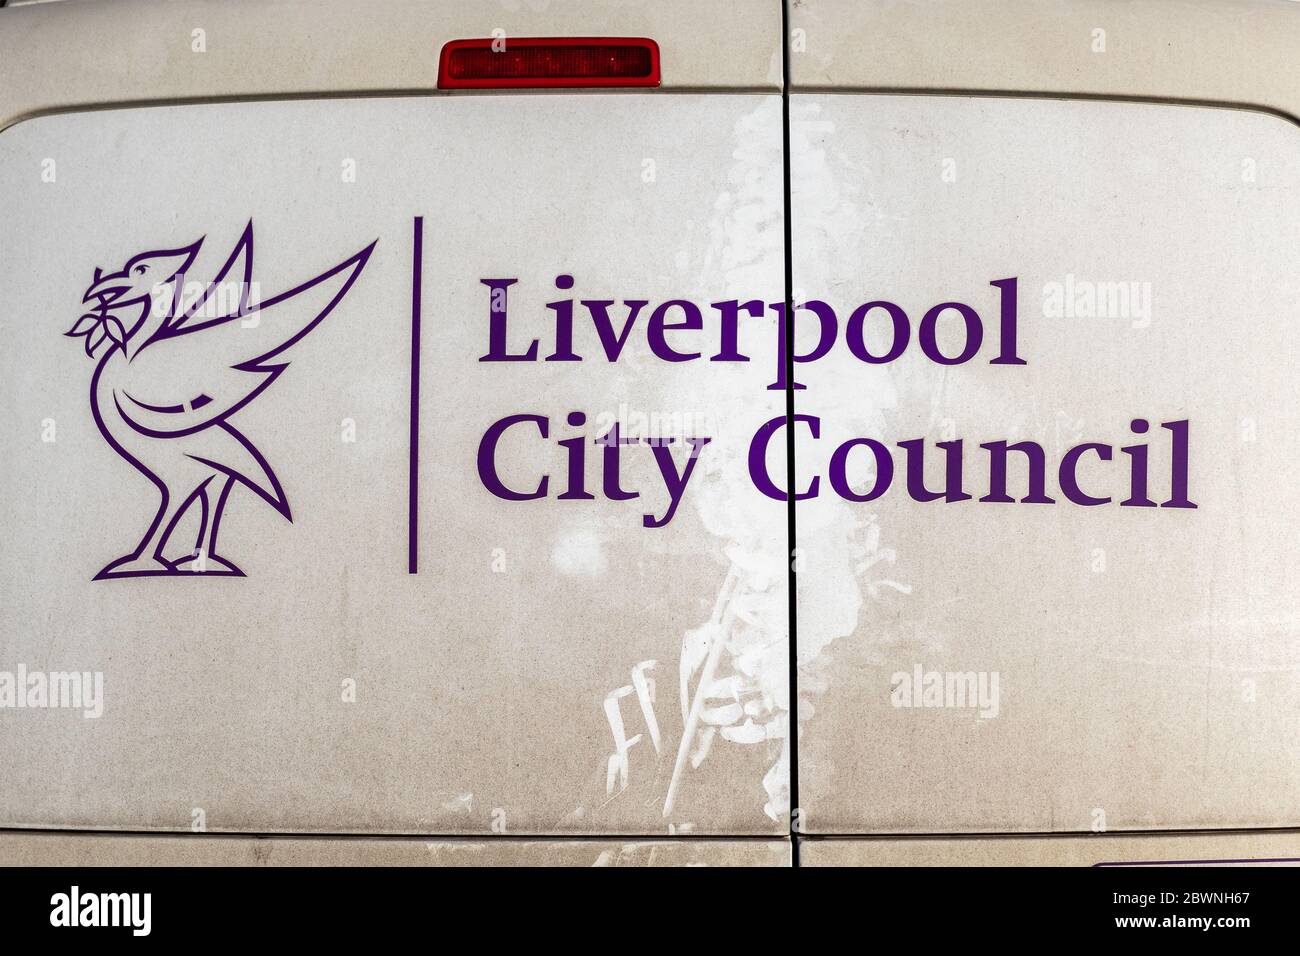 Portes arrière recouvertes de poussière de la fourgonnette Liverpool City Council avec logo d'oiseau de foie, Liverpool. Banque D'Images